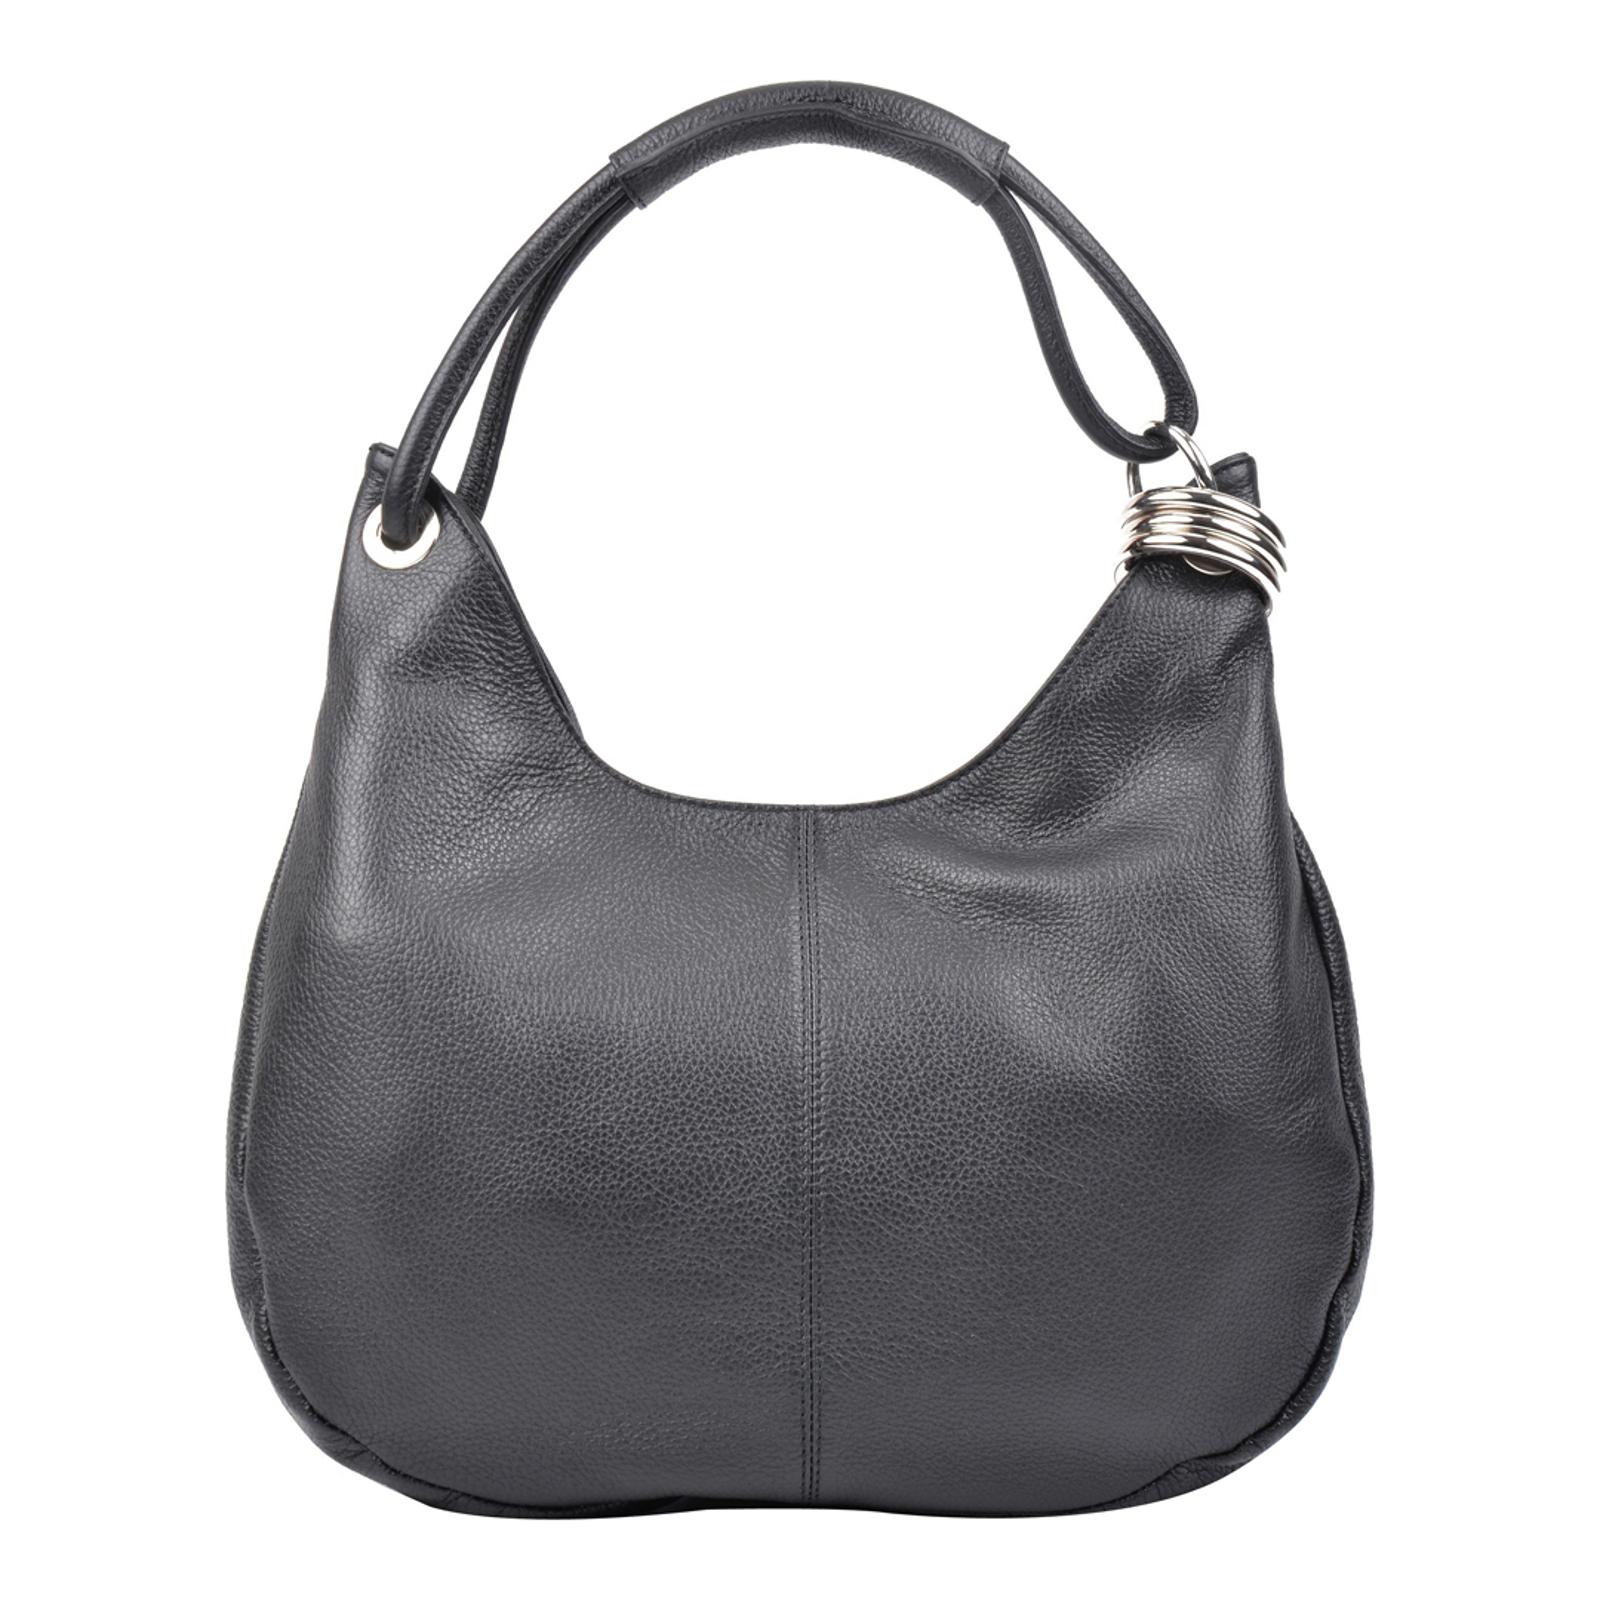 Black Leather Shoulder Bag - BrandAlley